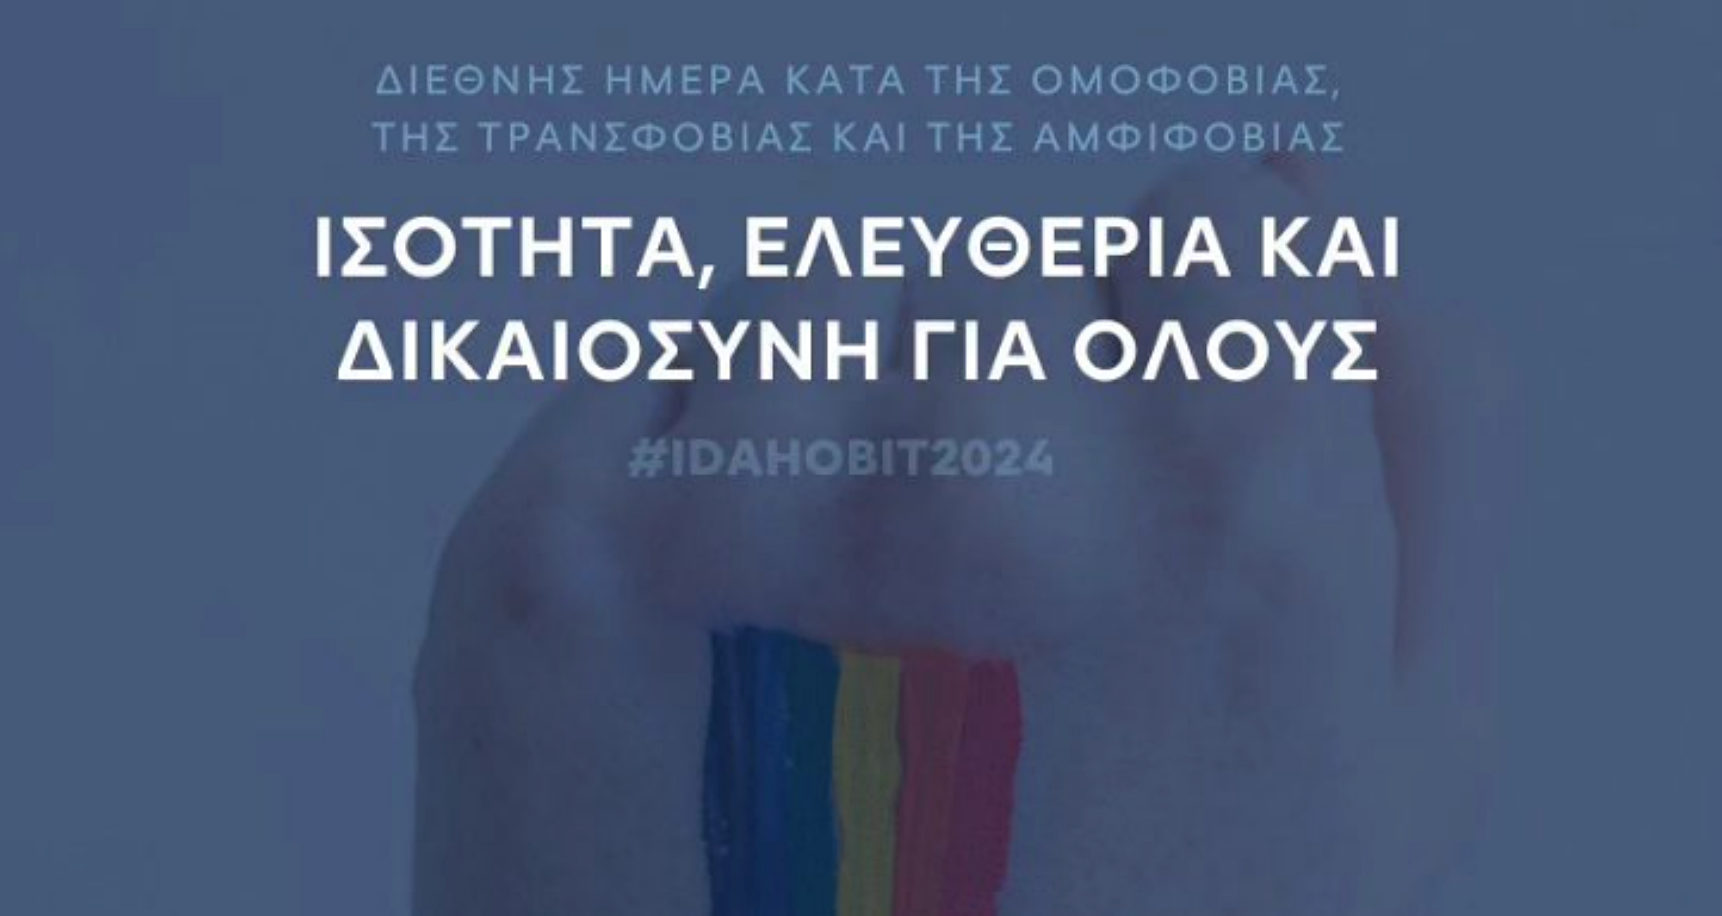 Μήνυμα συμπερίληψης από τον ΠΑΣ Γιάννινα ενάντια στην ομοφοβία και την τρανσφοβία